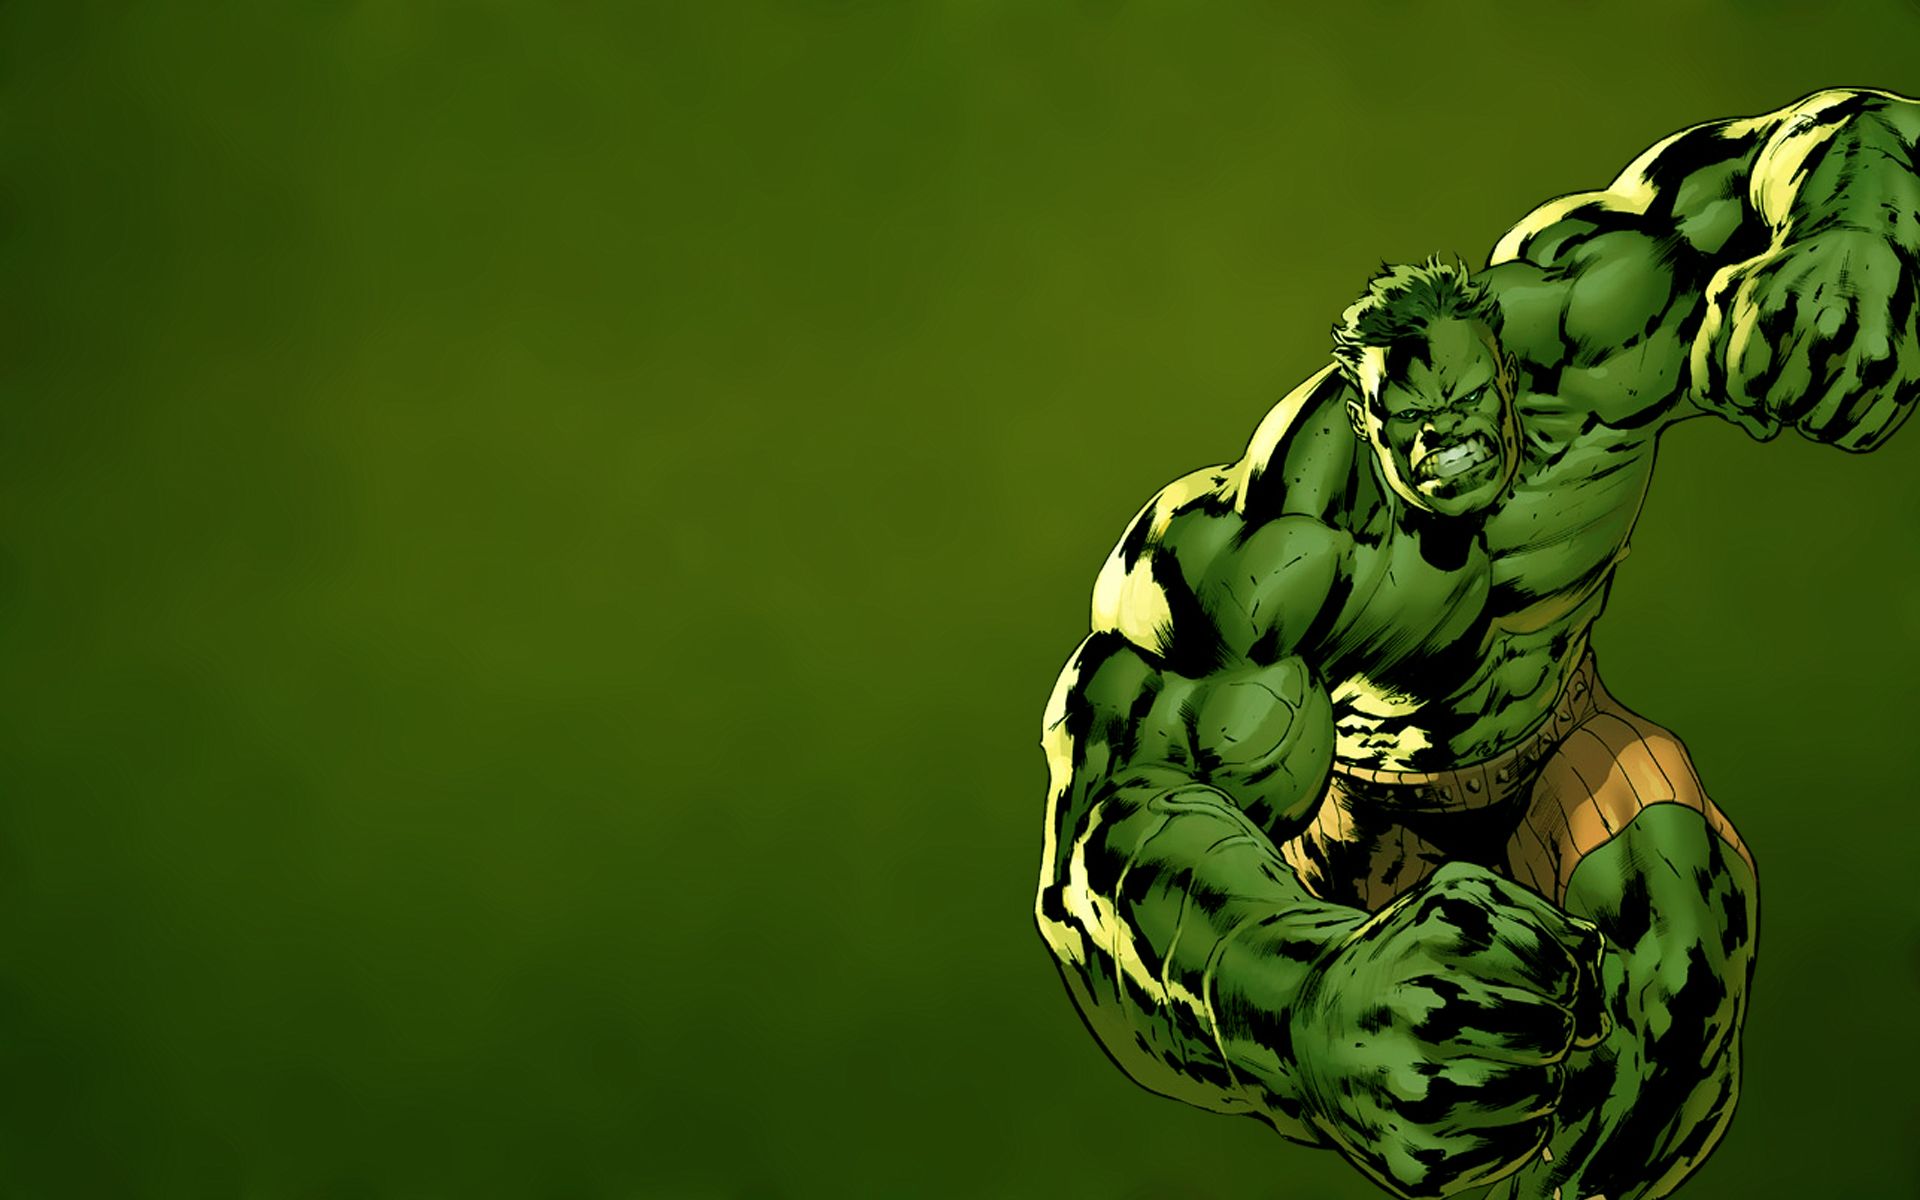 Incredible Hulk Wallpaper For Desktop The Incredibles